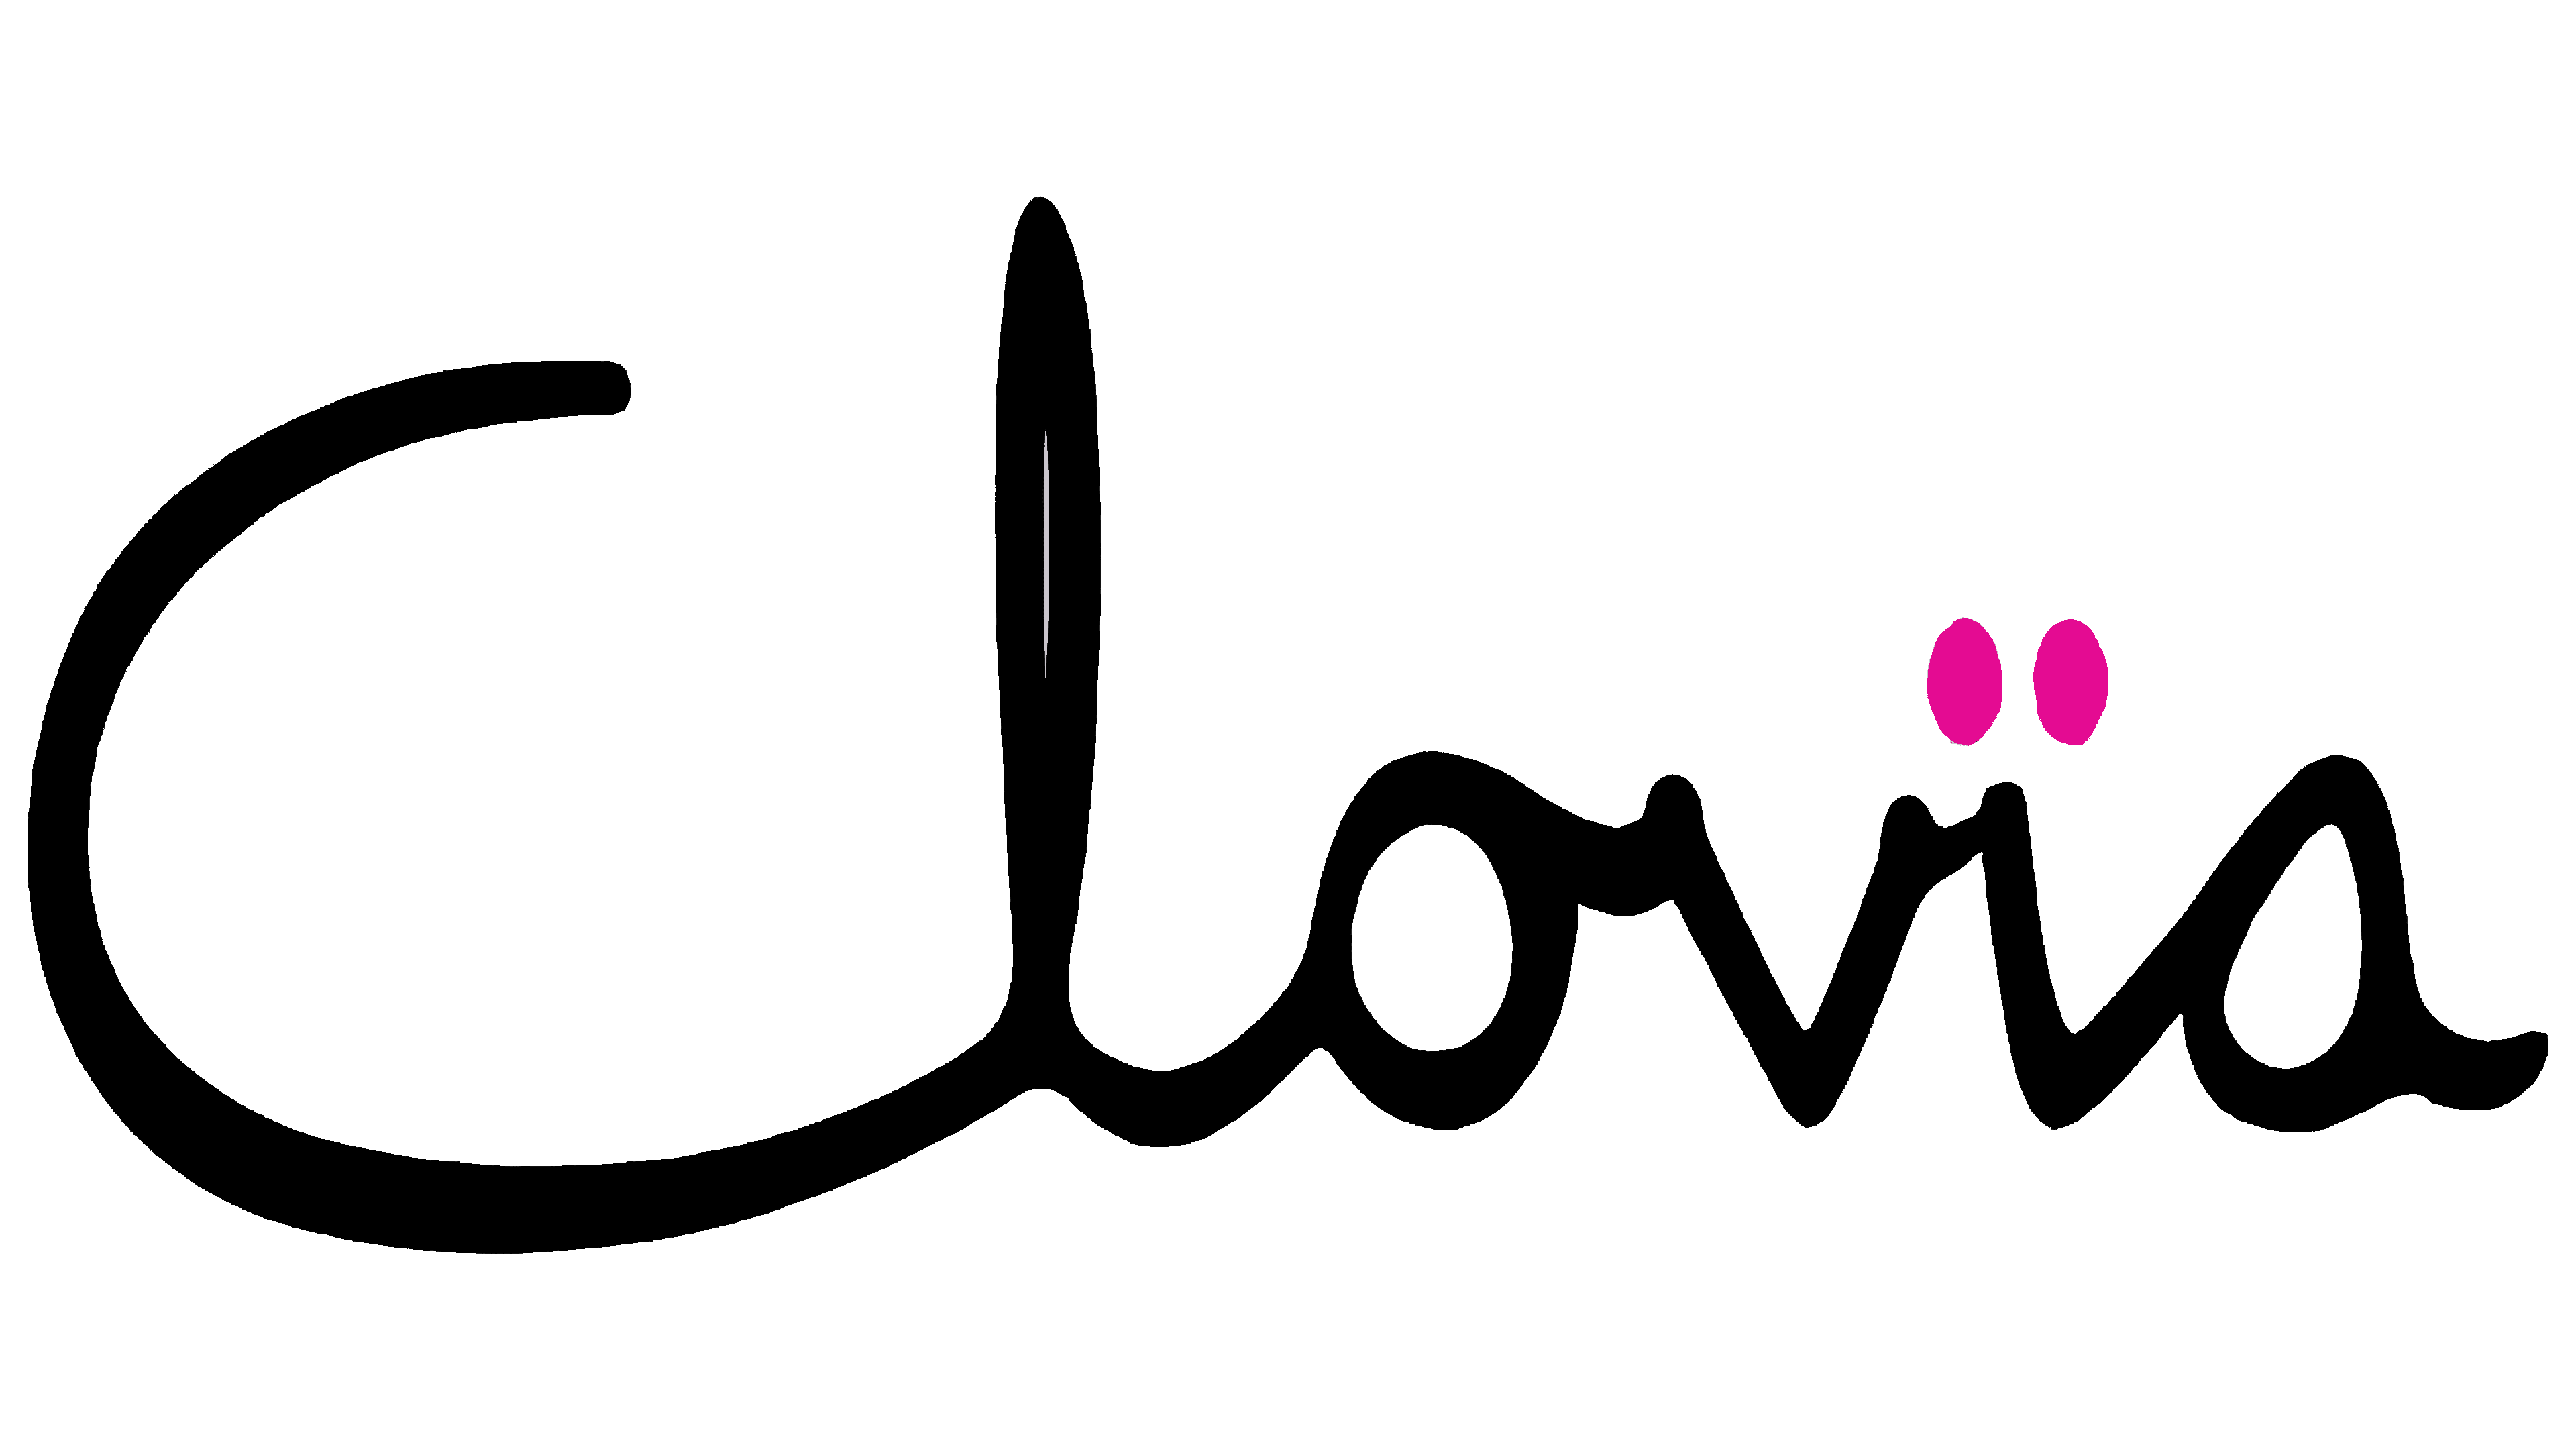 Clovia logo